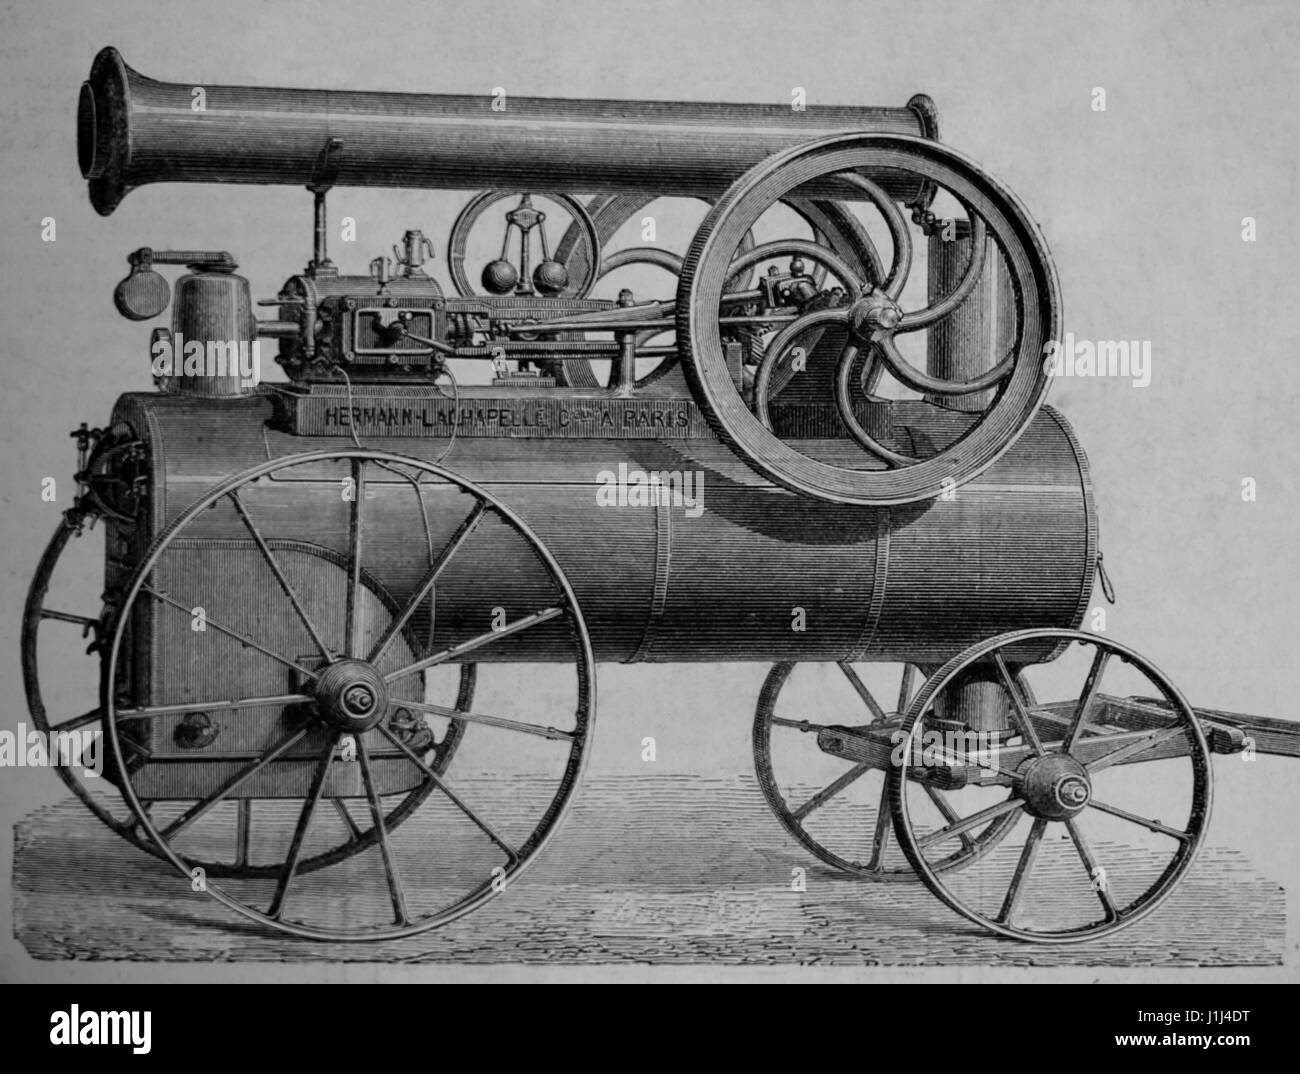 Horizontalen Dampfmaschine auf Räder, gebaut von Hermann Lachapelle. Kupferstich, 1875. Der spanische und amerikanische Abbildung. Spanische Ausgabe. Stockfoto